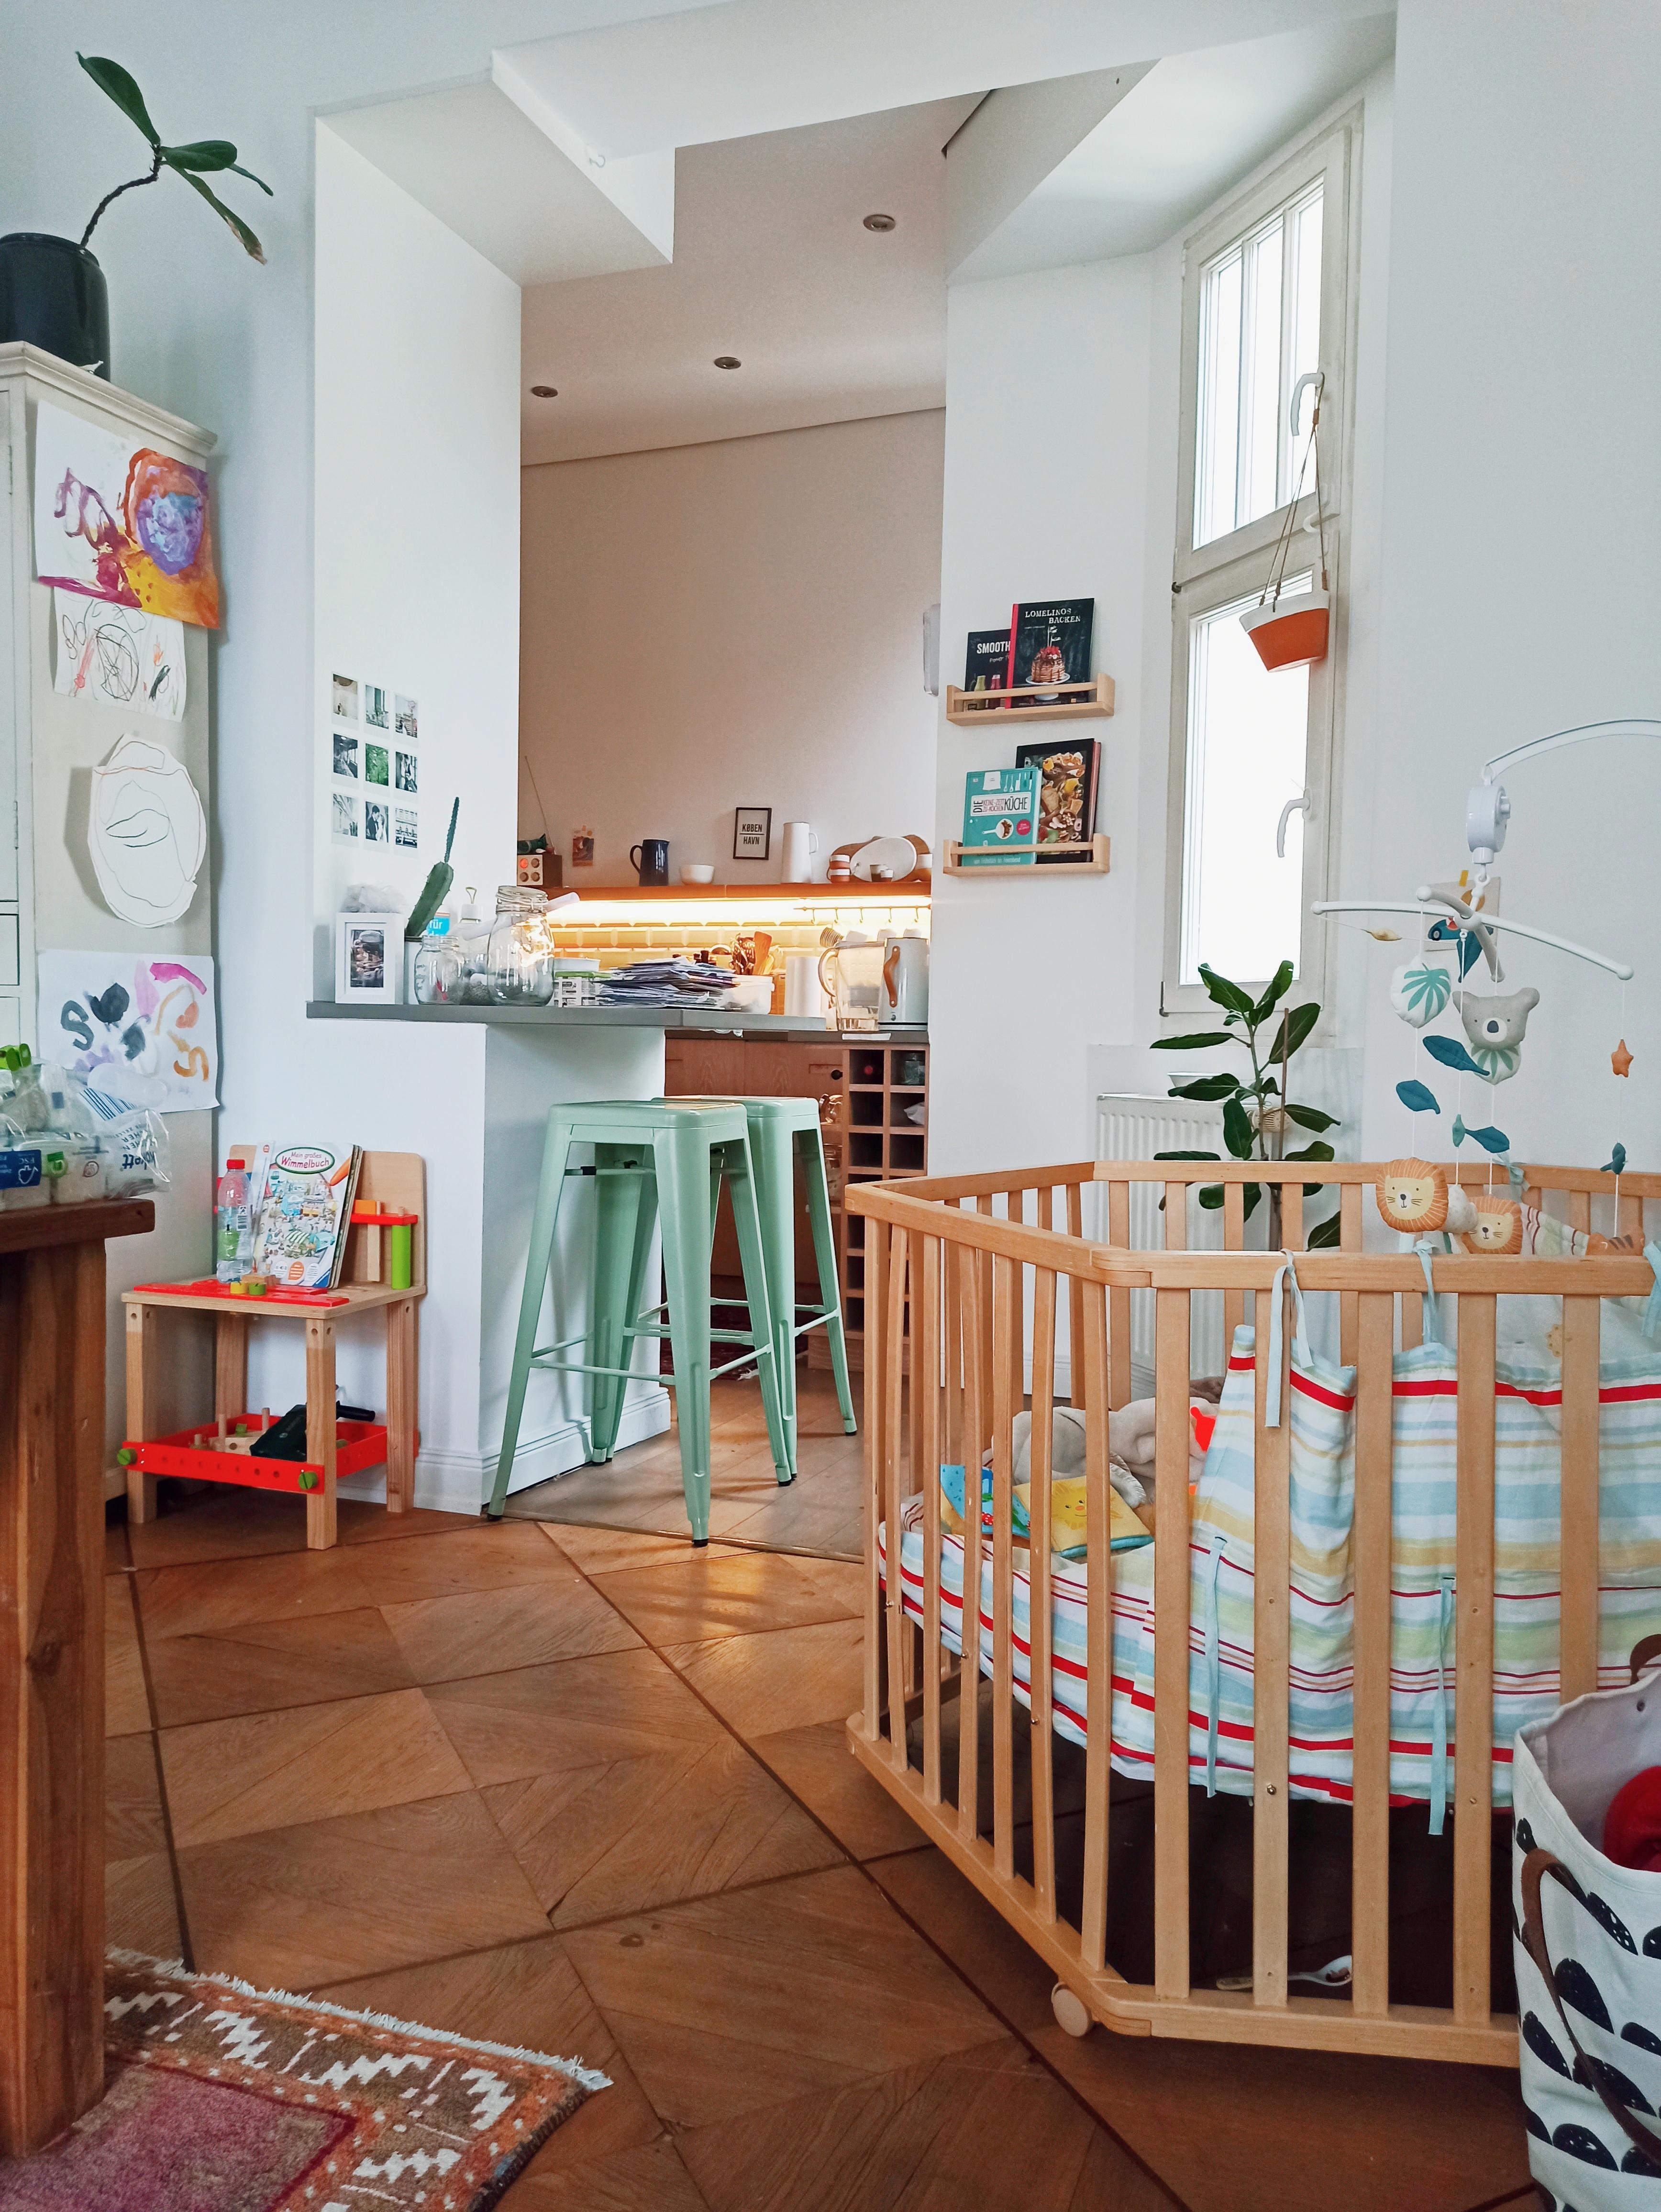 Blick in die Küche. Ich liebe die Farbe der Hocker ☺️ #küche #tresen #holzboden #altbau